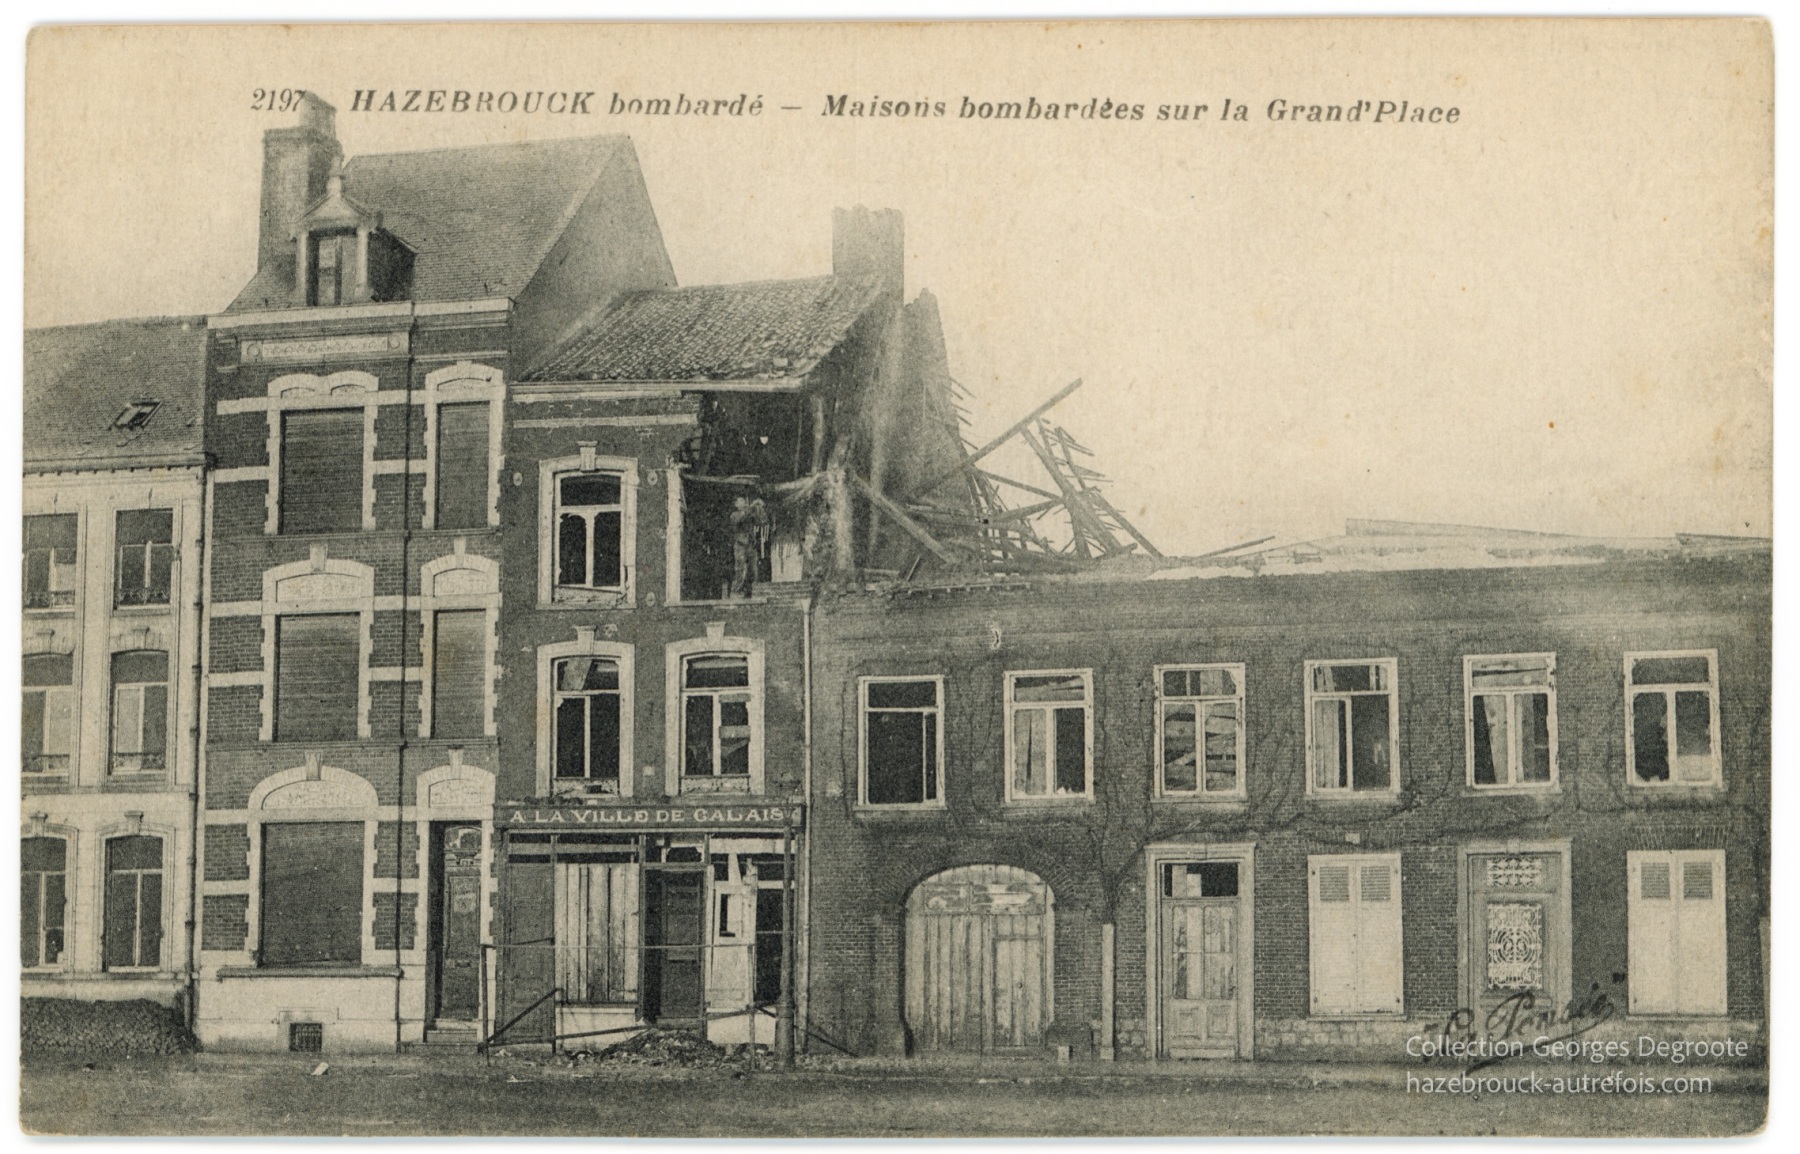 Hazebrouck bombardé - Maisons bombardés sur la Grand' Place